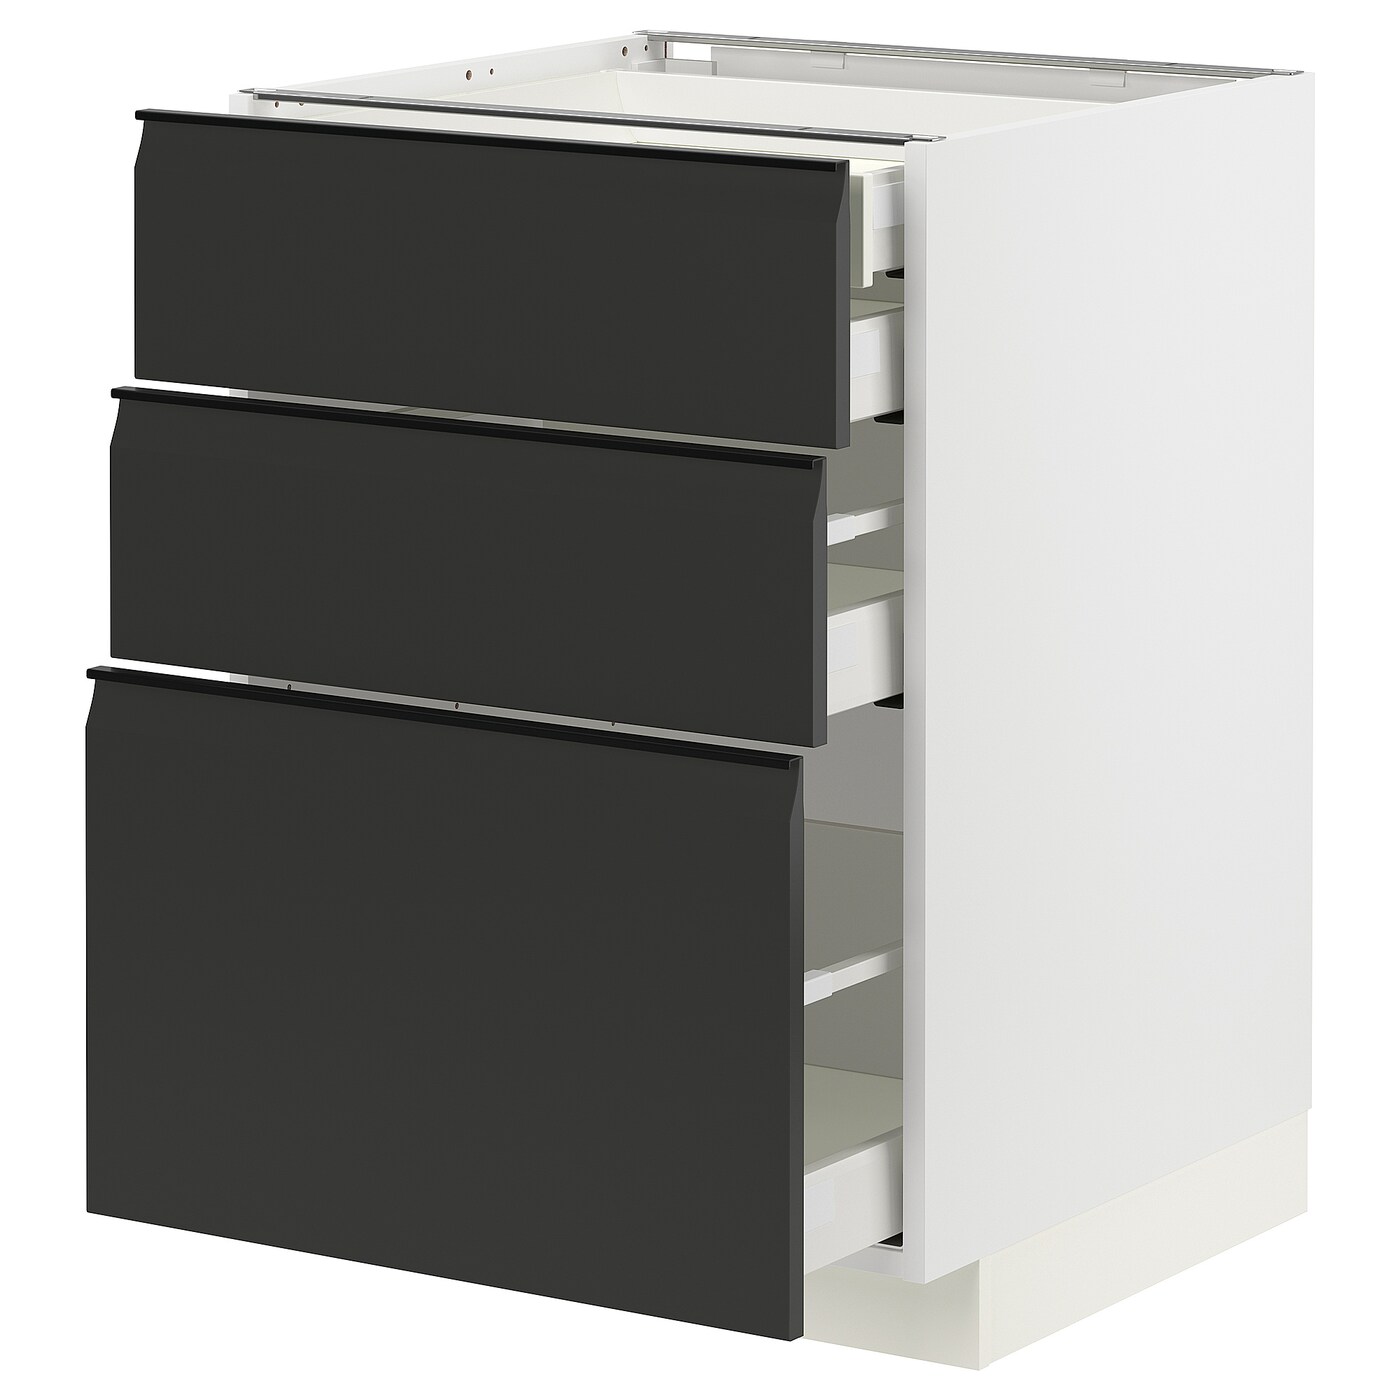 Напольный шкаф  - IKEA METOD MAXIMERA, 88x61,6x60см, белый/черный, МЕТОД МАКСИМЕРА ИКЕА